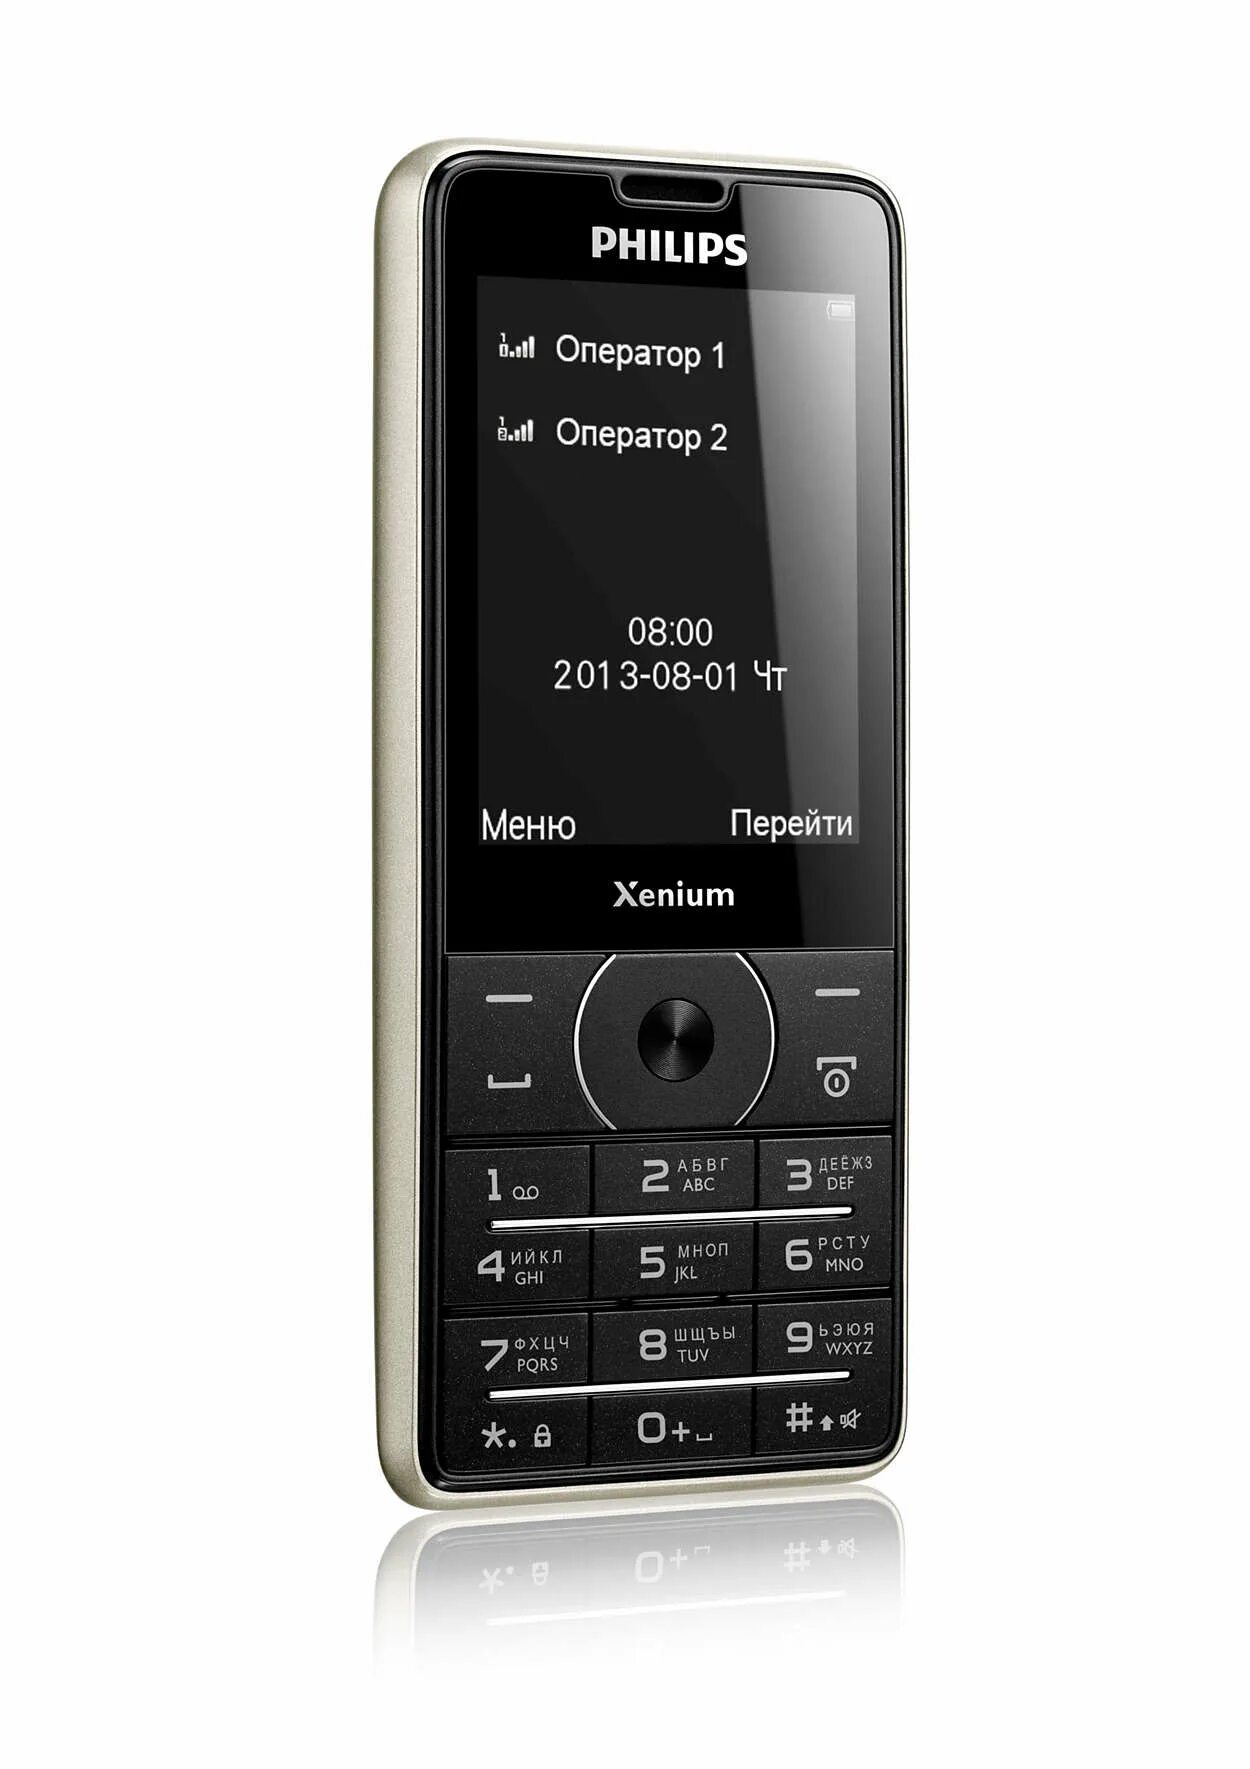 Номер телефона филипс. Philips Xenium x1560. Philips x1560 (Black). Philips Xenium 1560. Телефон Филипс Xenium 1560.